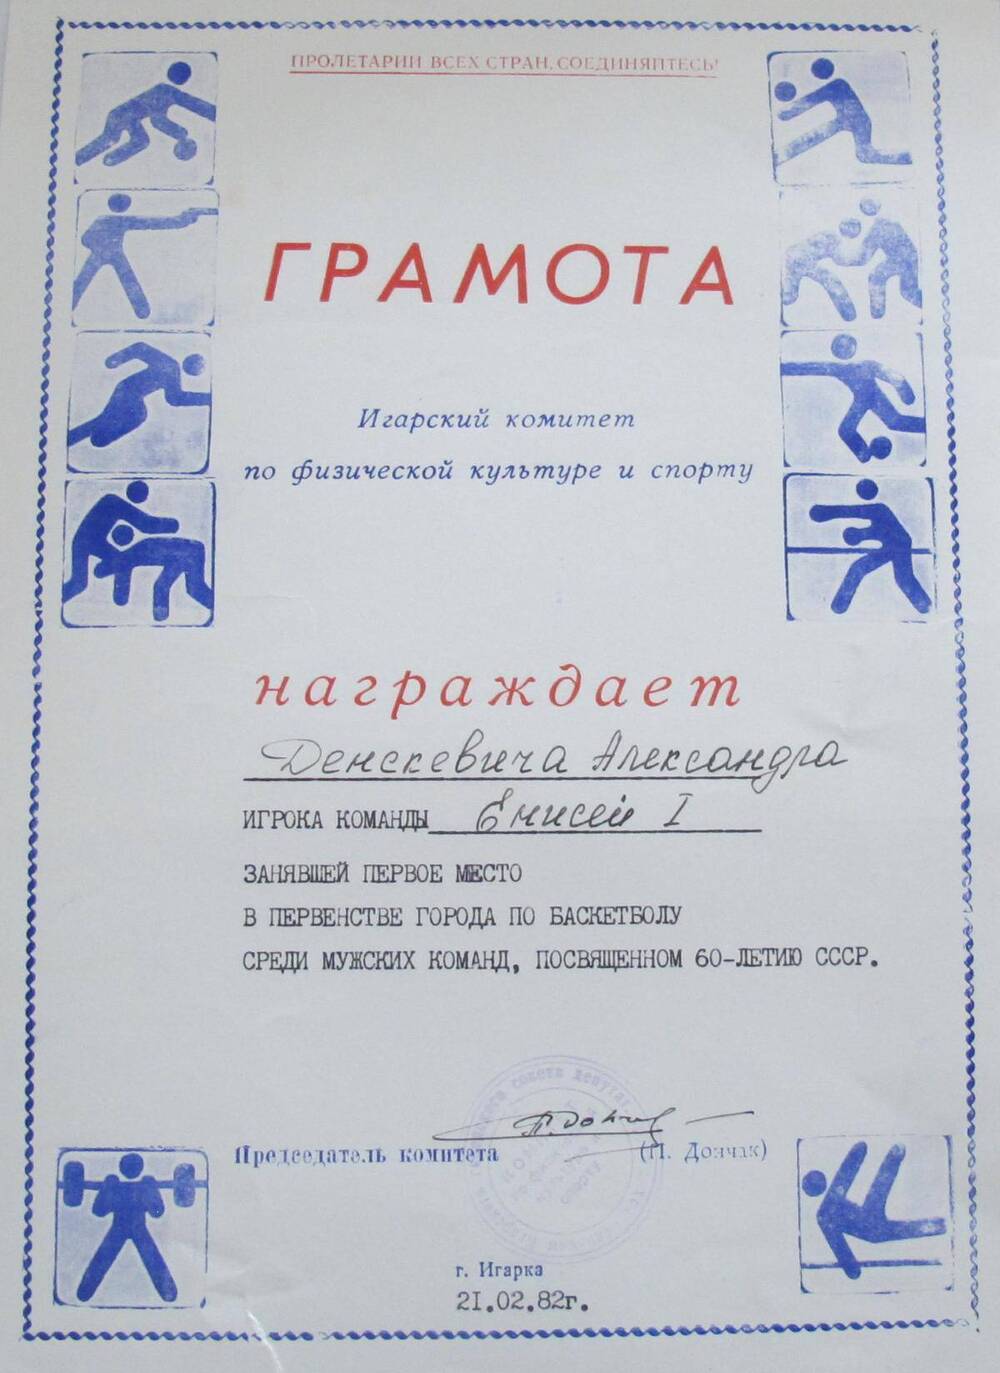 Грамота Денскевича Александра Никоноровича, игрока команды Енисей I, занявший первое место в первенстве города по баскетболу среди мужских команд, посвященном 60-летию СССР.